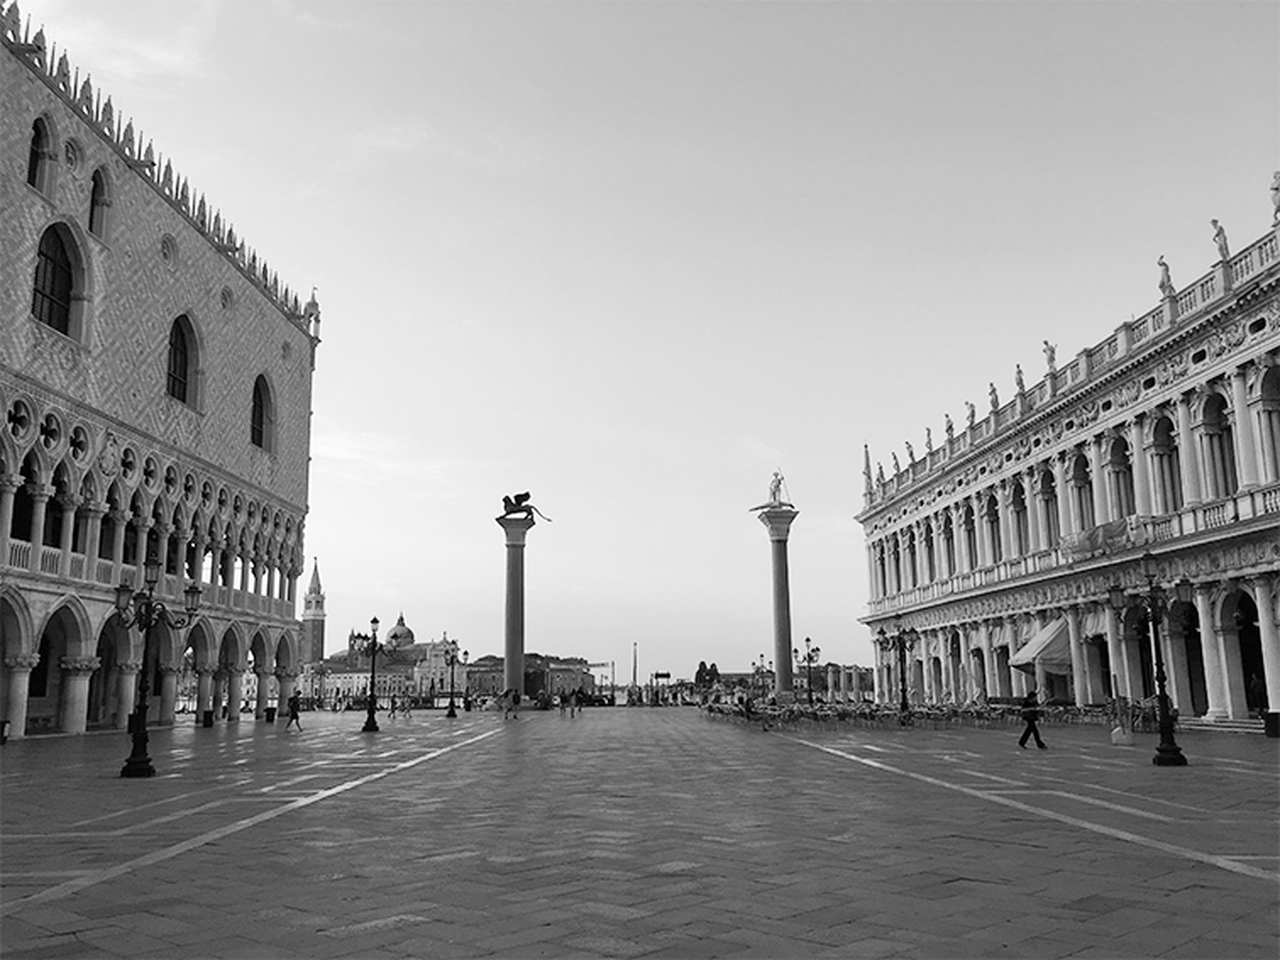 Venecia, territorio frágil: la turistificación en la ciudad de los canales